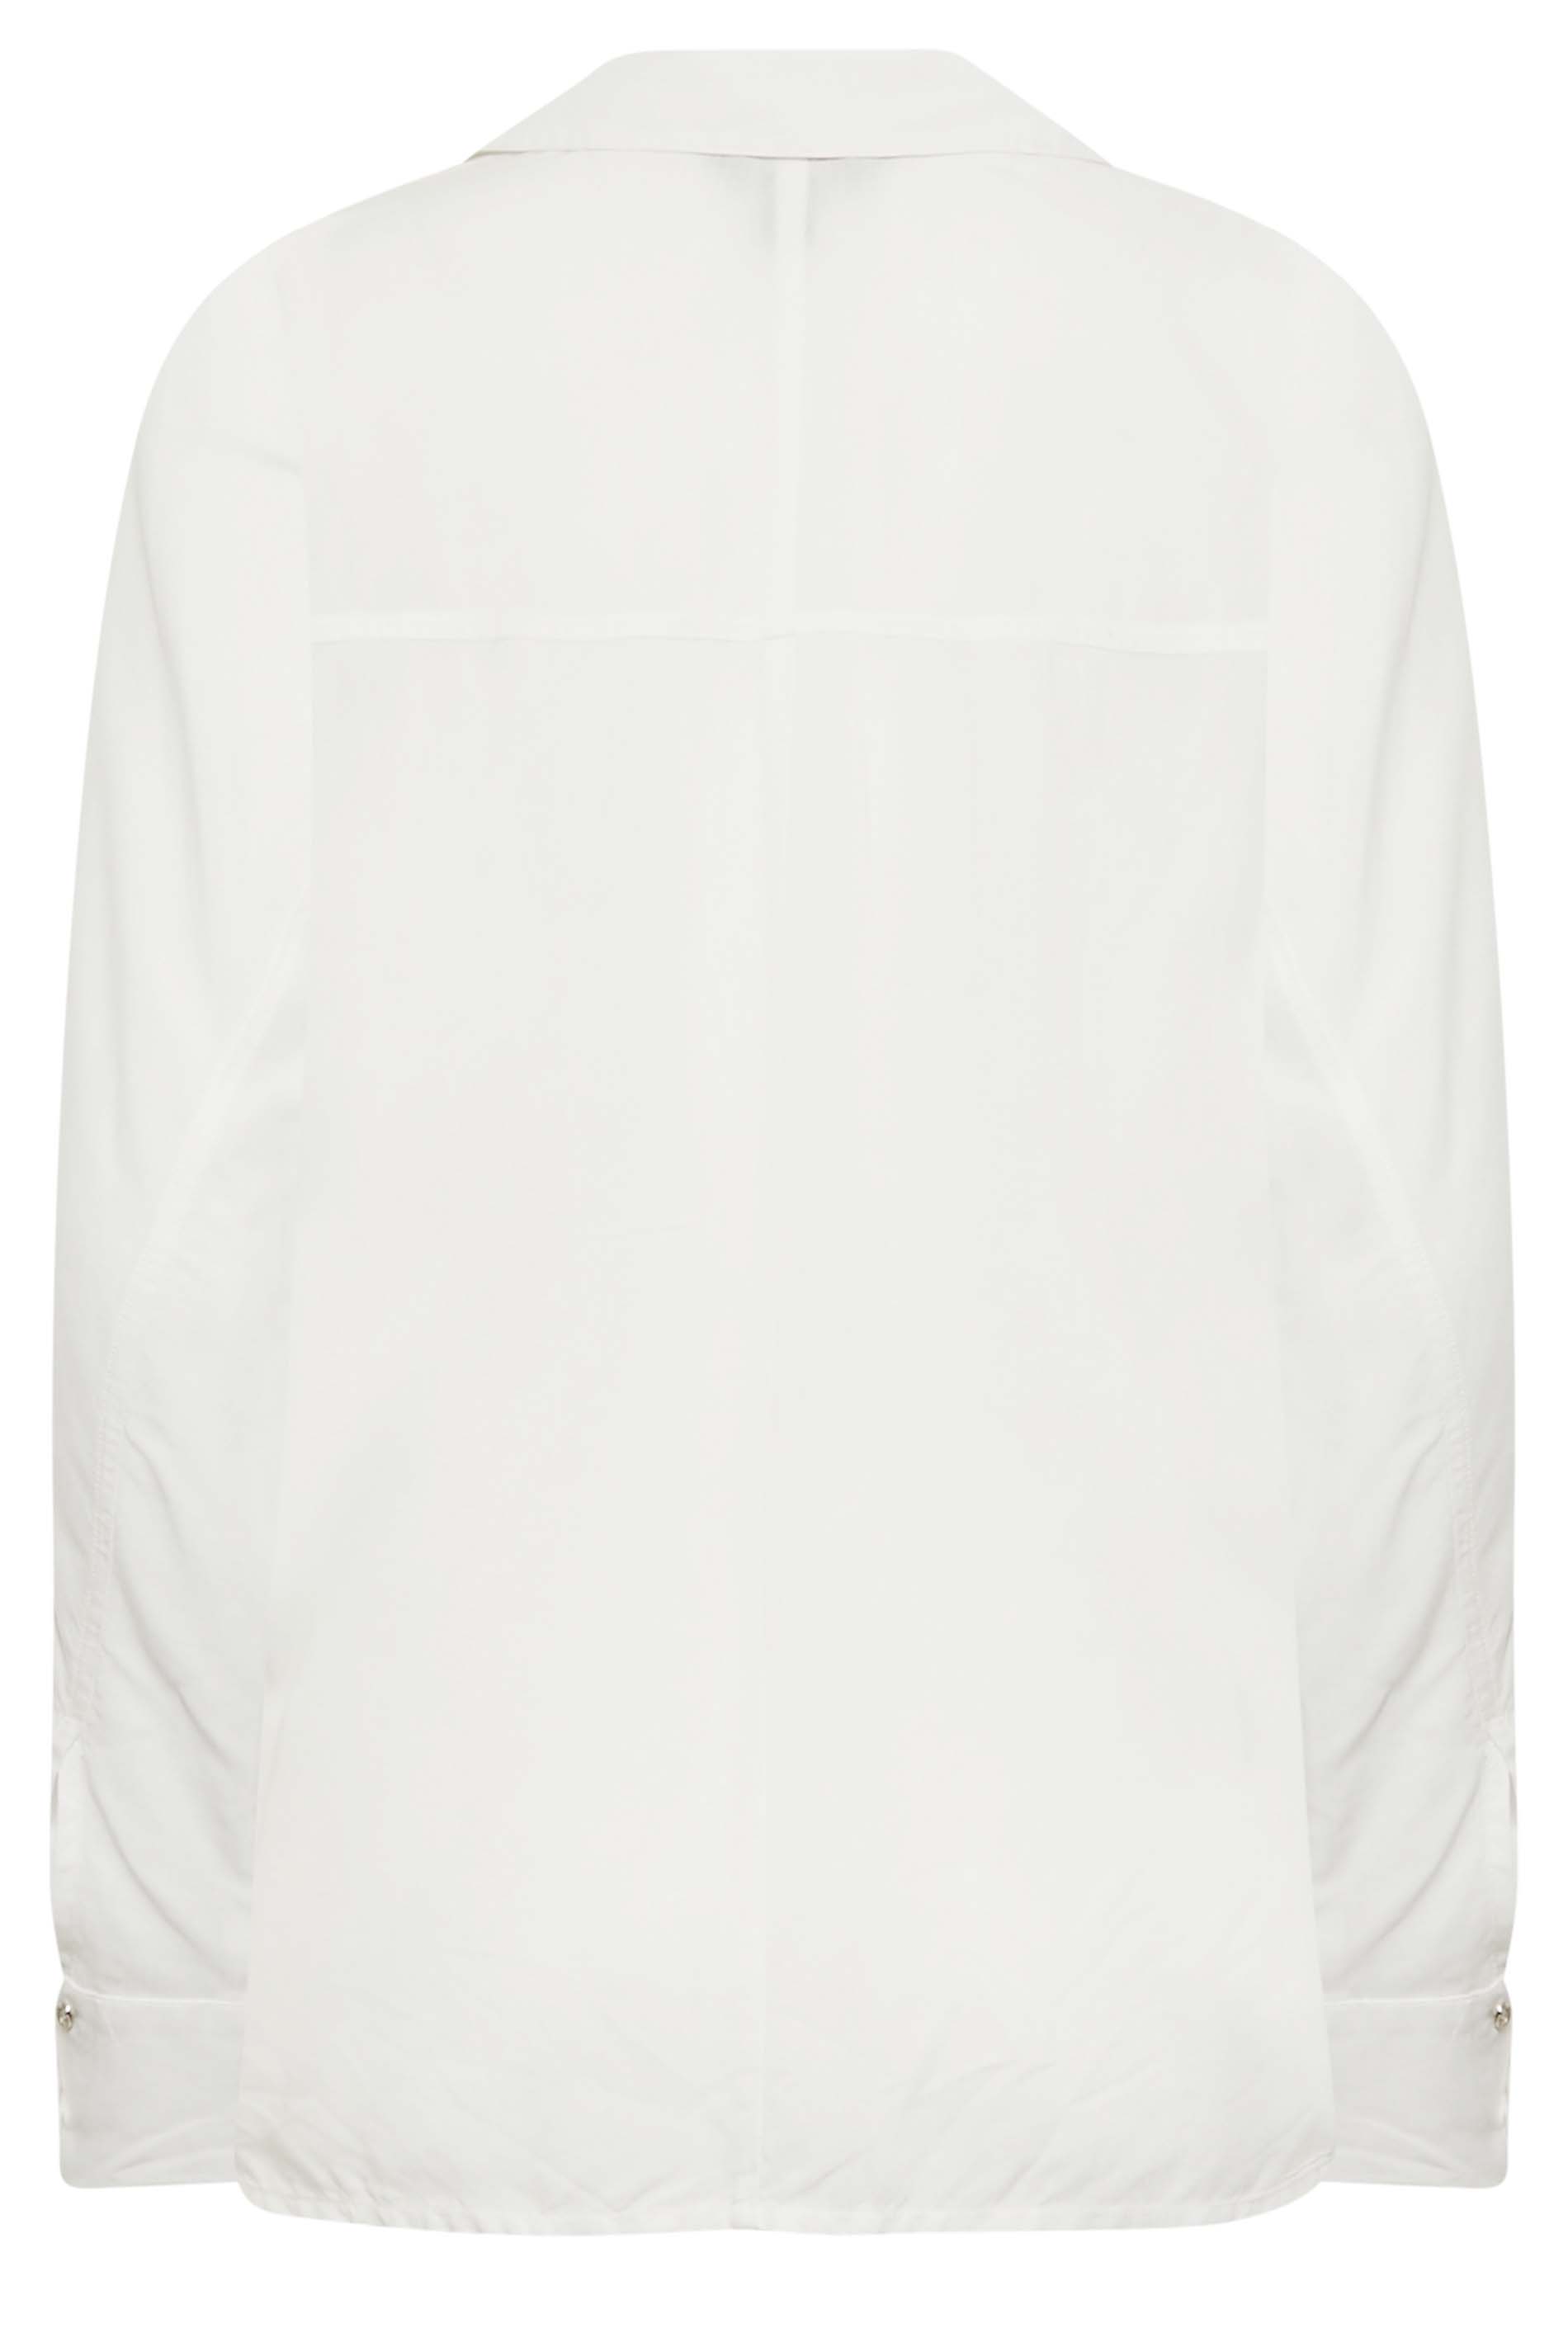 LTS Tall Women's White Long Sleeve Shirt | Long Tall Sally 3